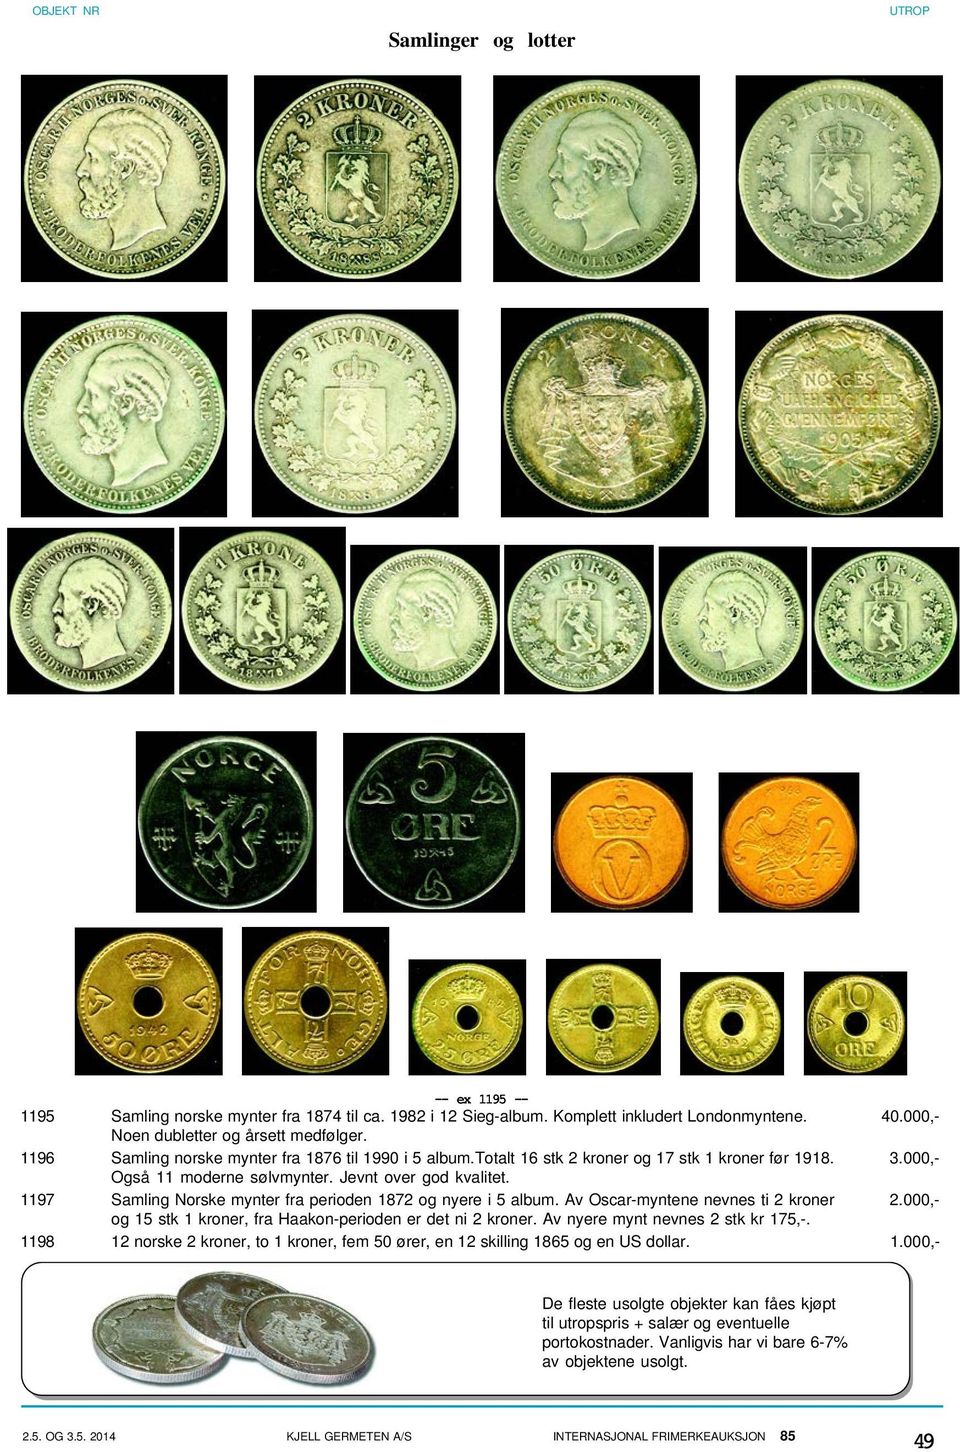 1197 Samling Norske mynter fra perioden 1872 og nyere i 5 album. Av Oscar-myntene nevnes ti 2 kroner 2.000,- og 15 stk 1 kroner, fra Haakon-perioden er det ni 2 kroner.